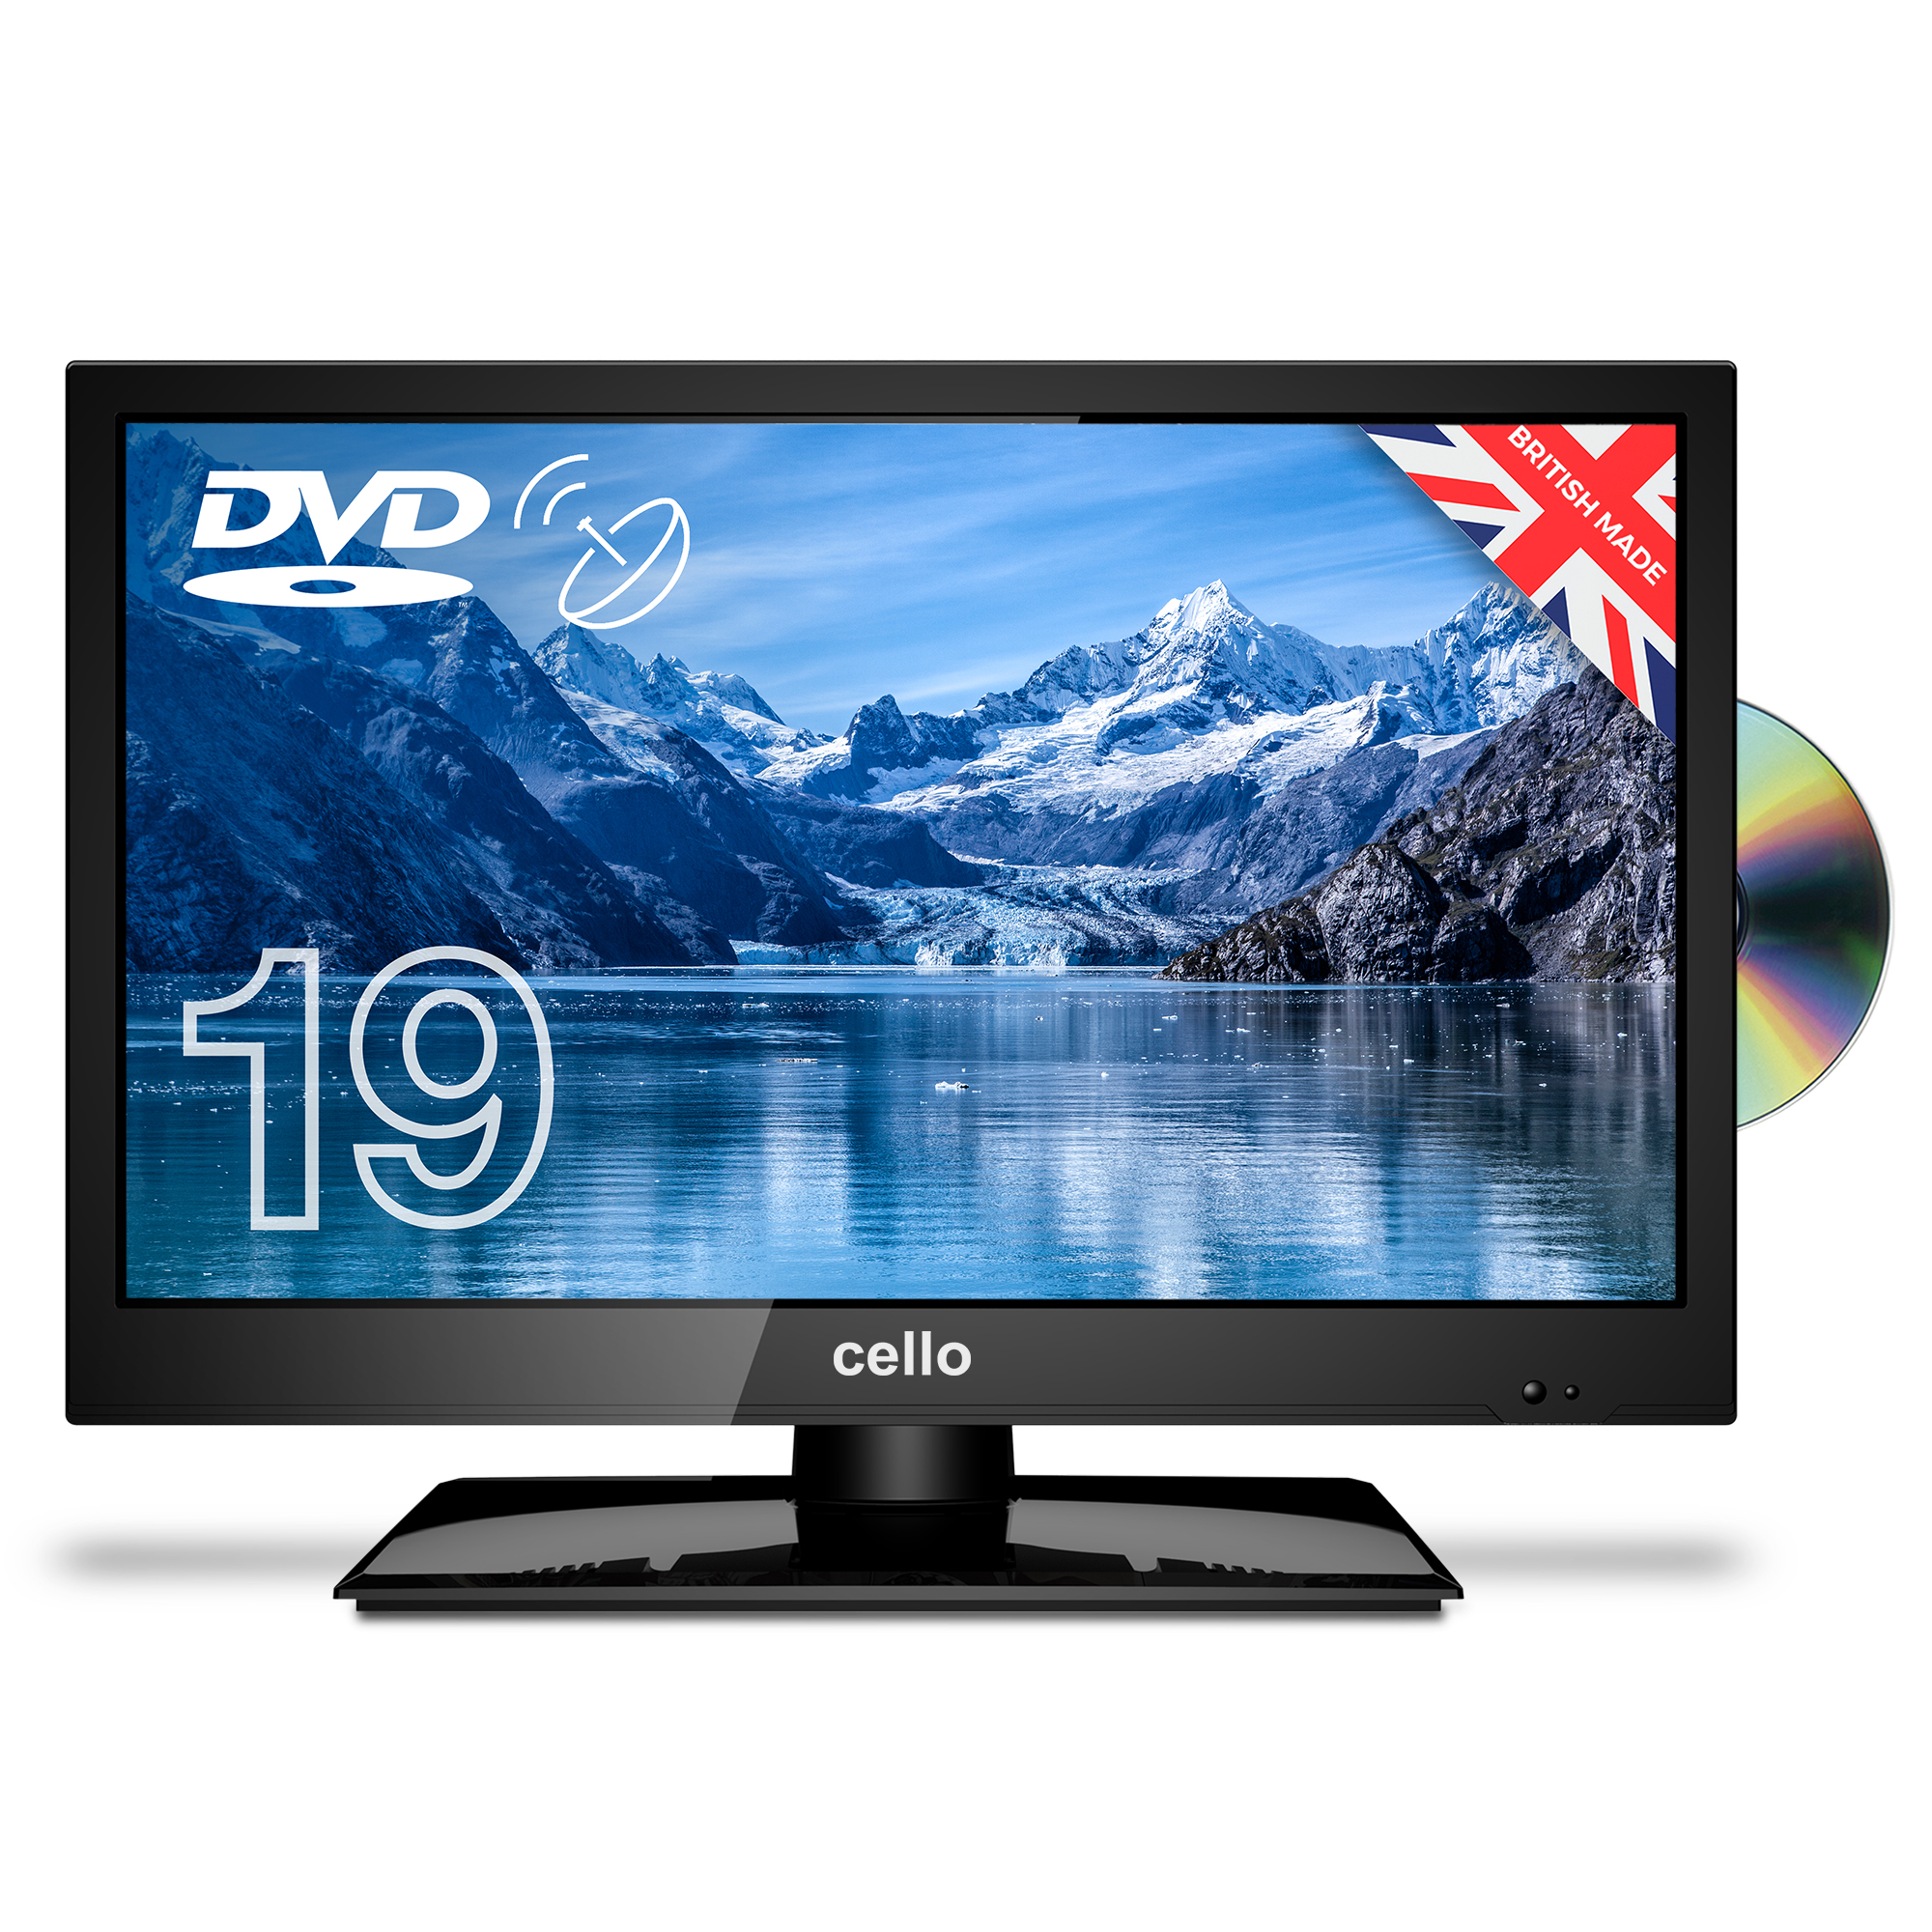 12 Volt TV's - 12 Volt Television - Digital TV/DVD Combo at 12Volt-Travel®